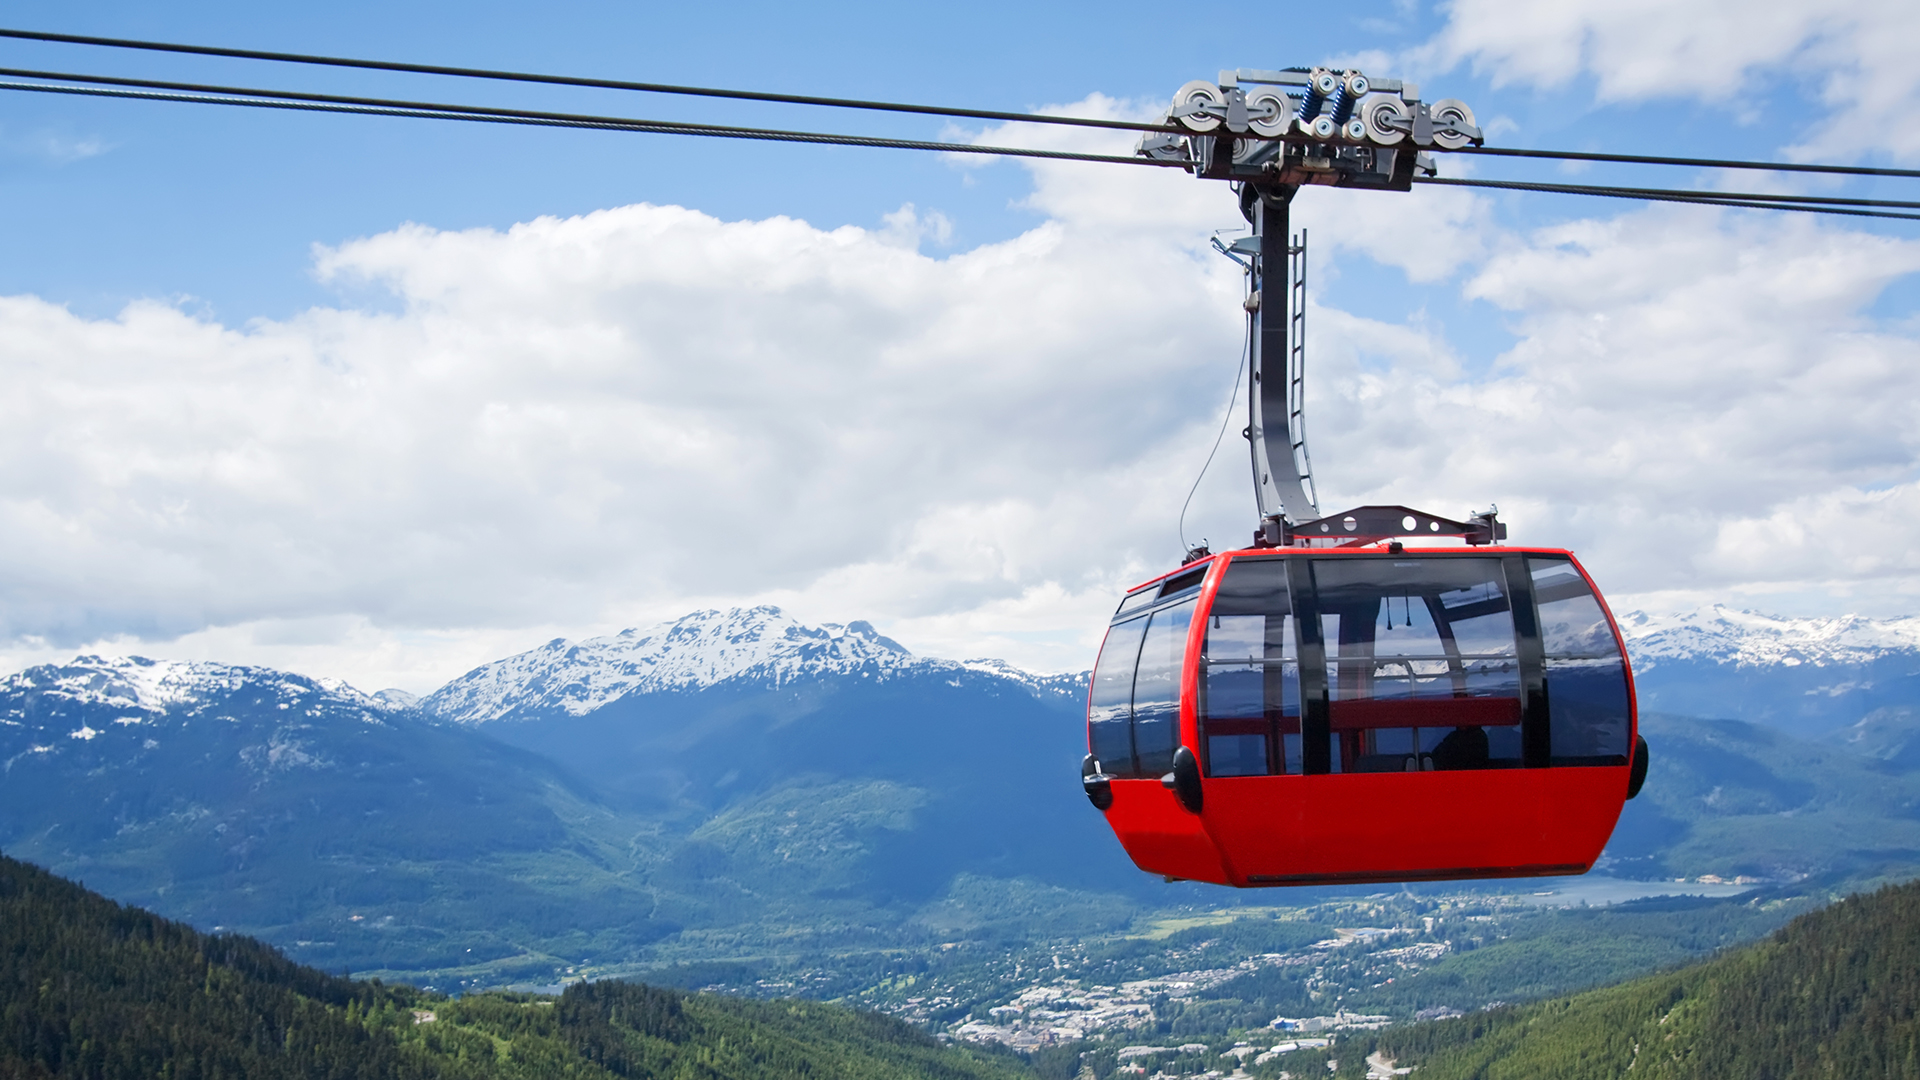 Peak to Peak: Building the World's Biggest Gondola